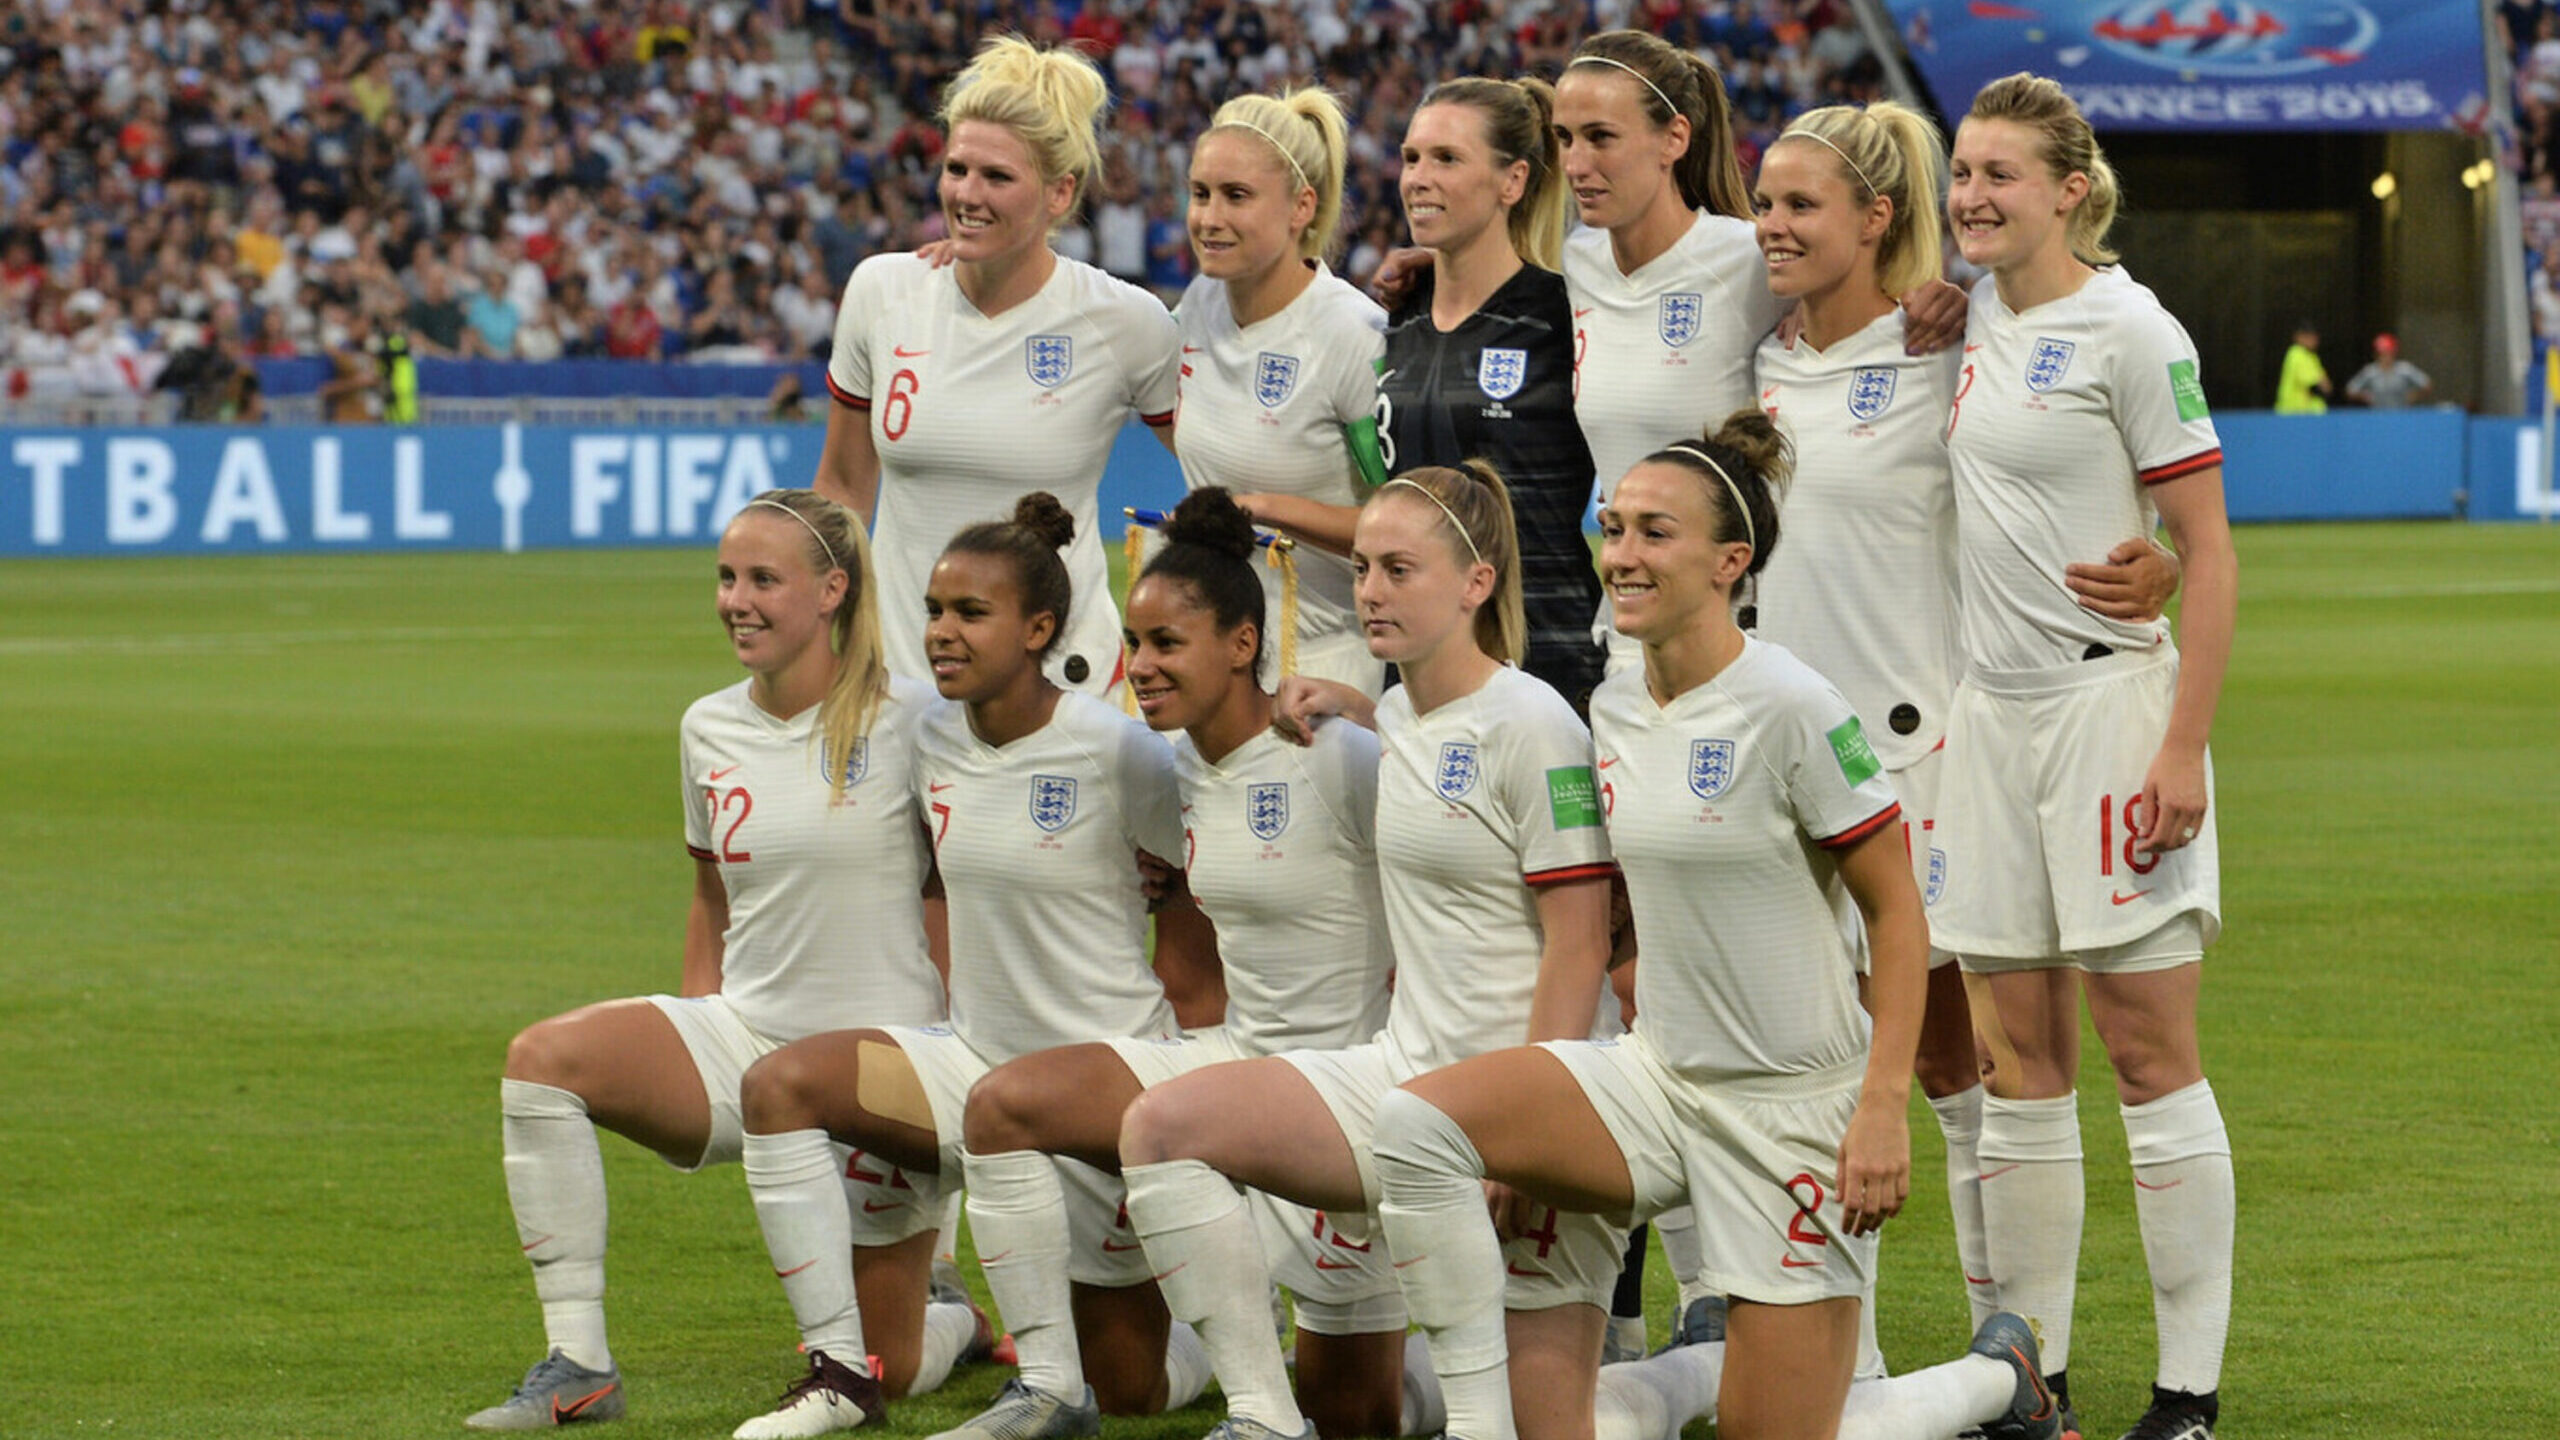 Inglaterra y Nueva Zelanda eliminan el short blanco de su uniforme